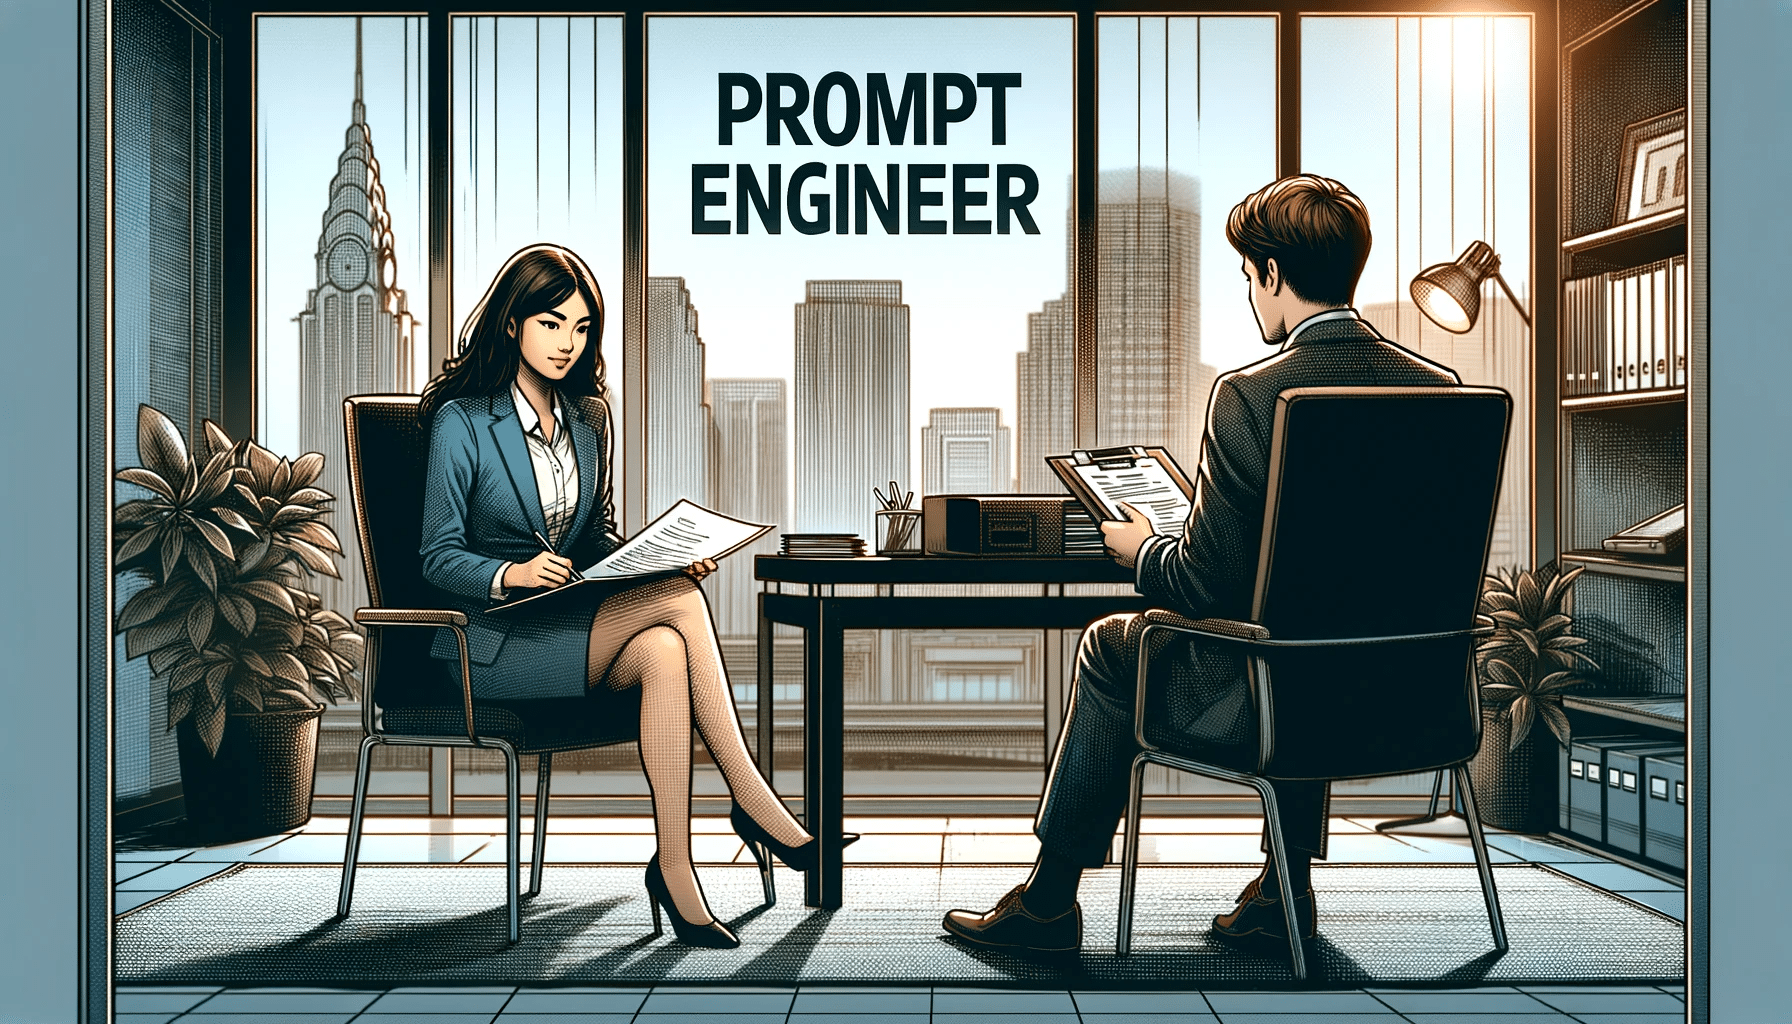 Une jeune femme en entretien d'embauche pour un poste d'ingénieur de prompt, assise en face d'un intervieweur dans un bureau corporate moderne